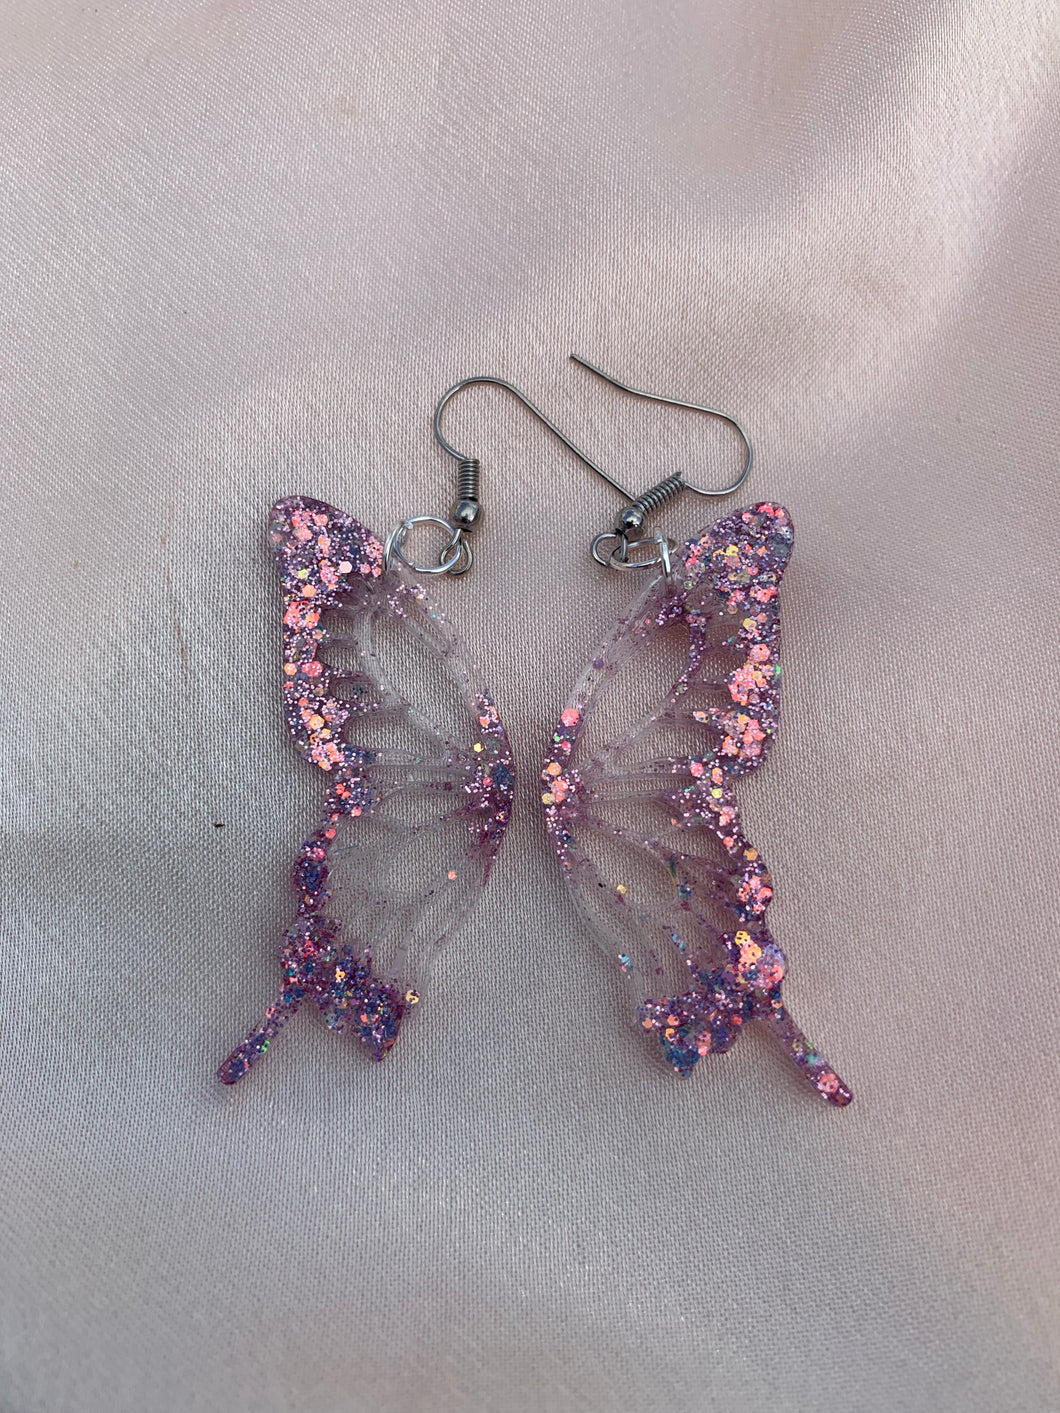 Lavender glitter butterfly wing earrings